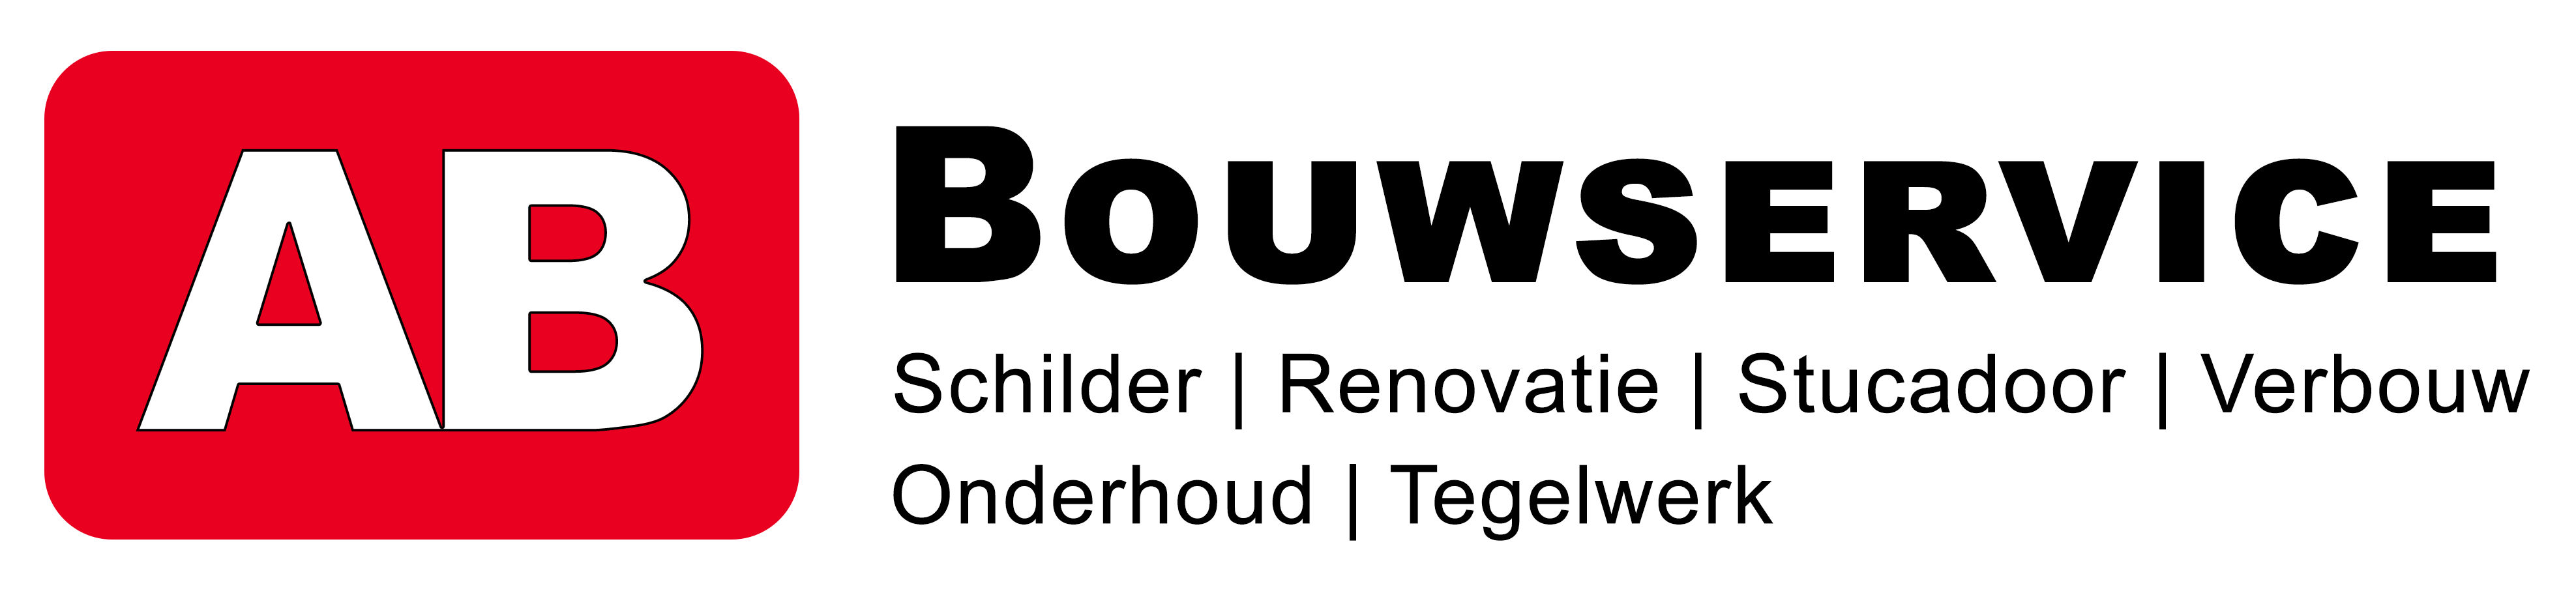 AB-bouwservice logo